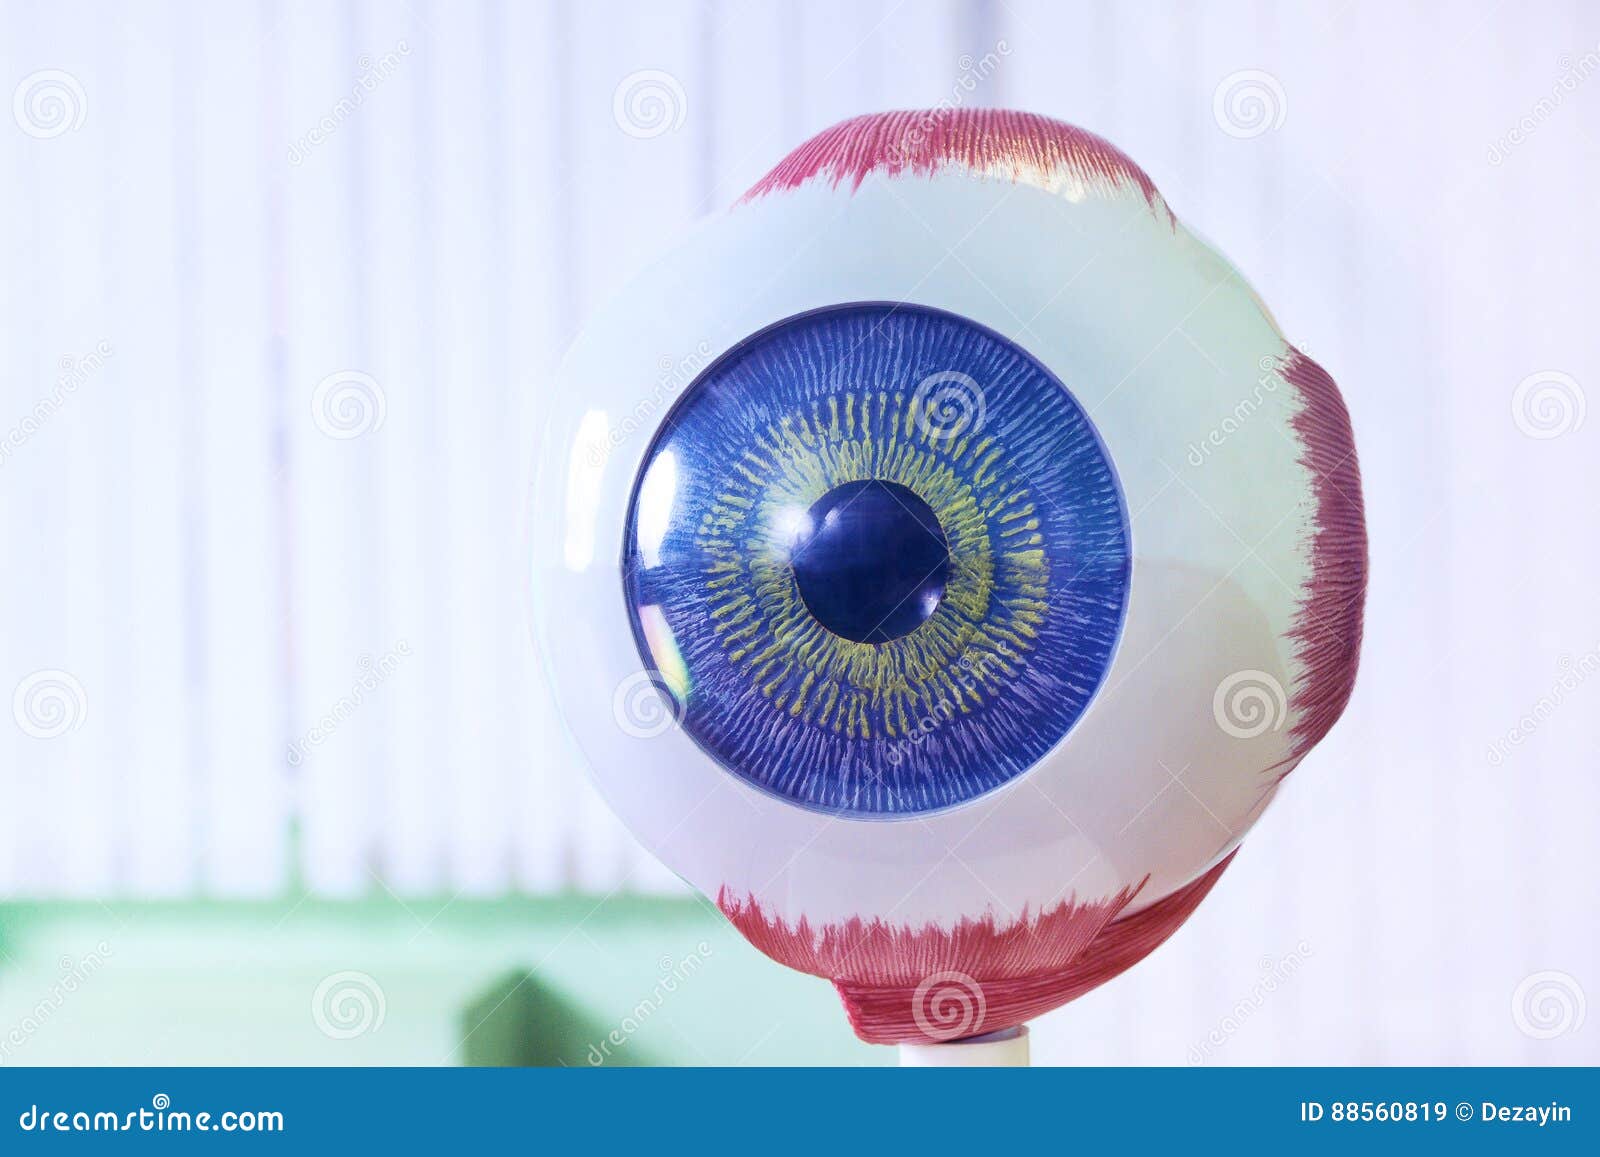 ophthalmology oculus sample closeup